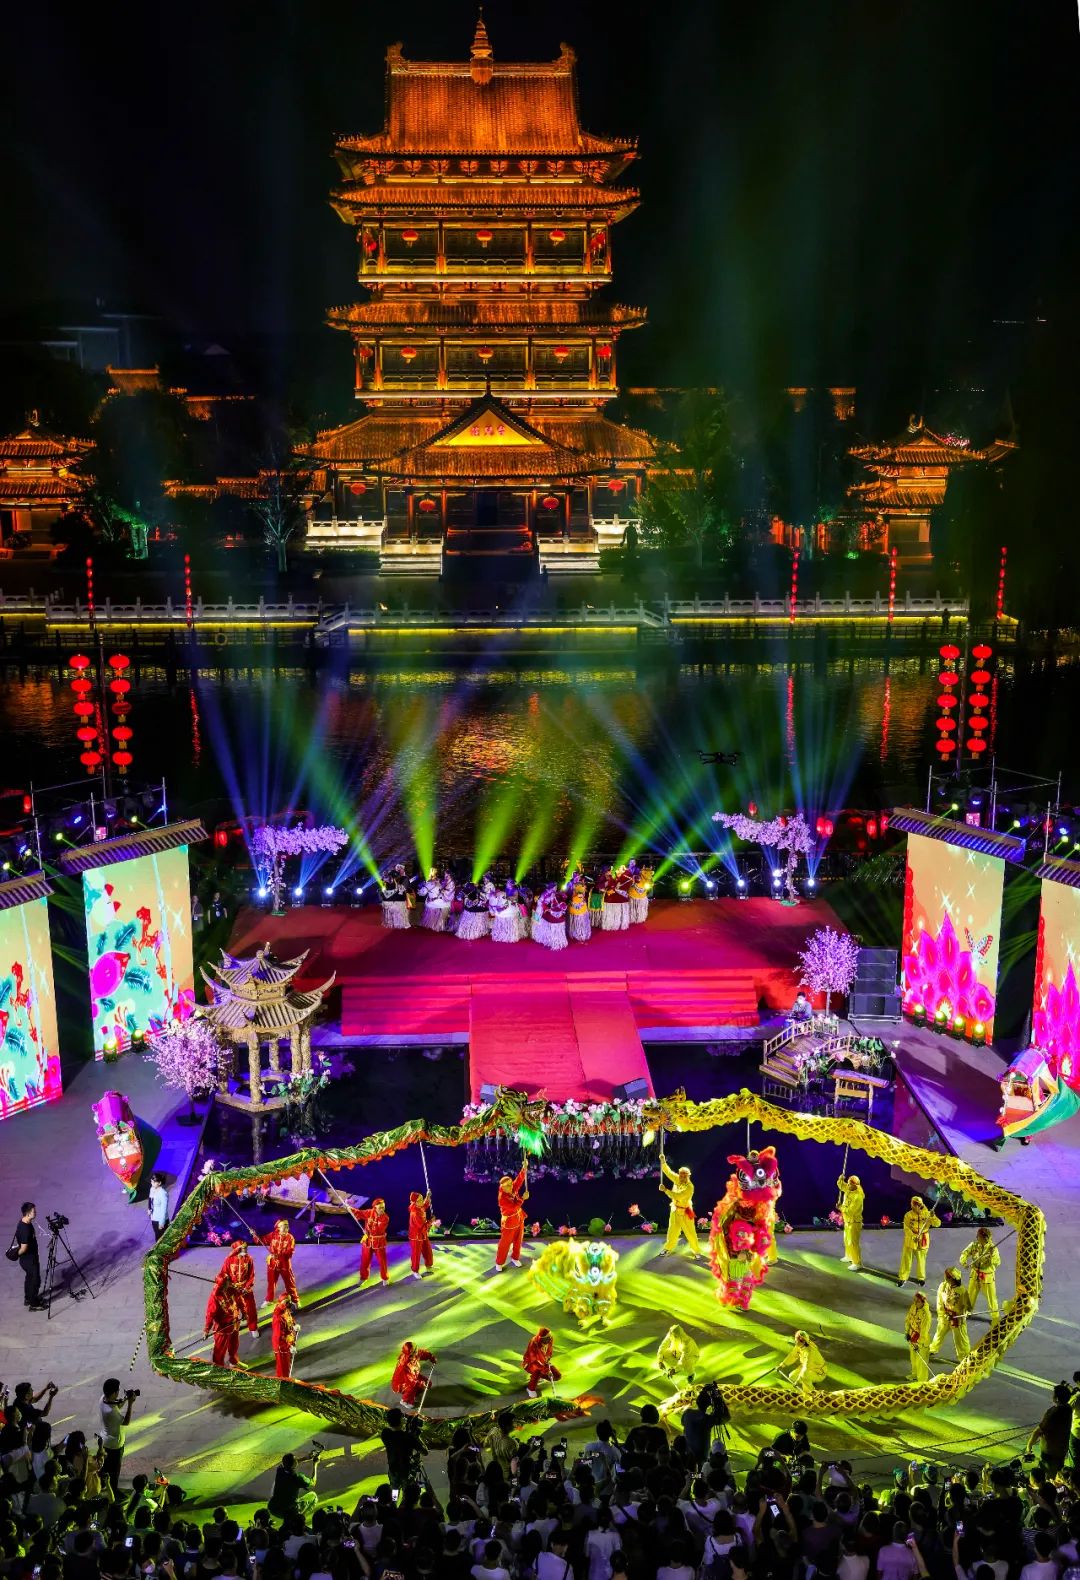 9月20日晚,拜月大典在台儿庄古城复兴广场举办